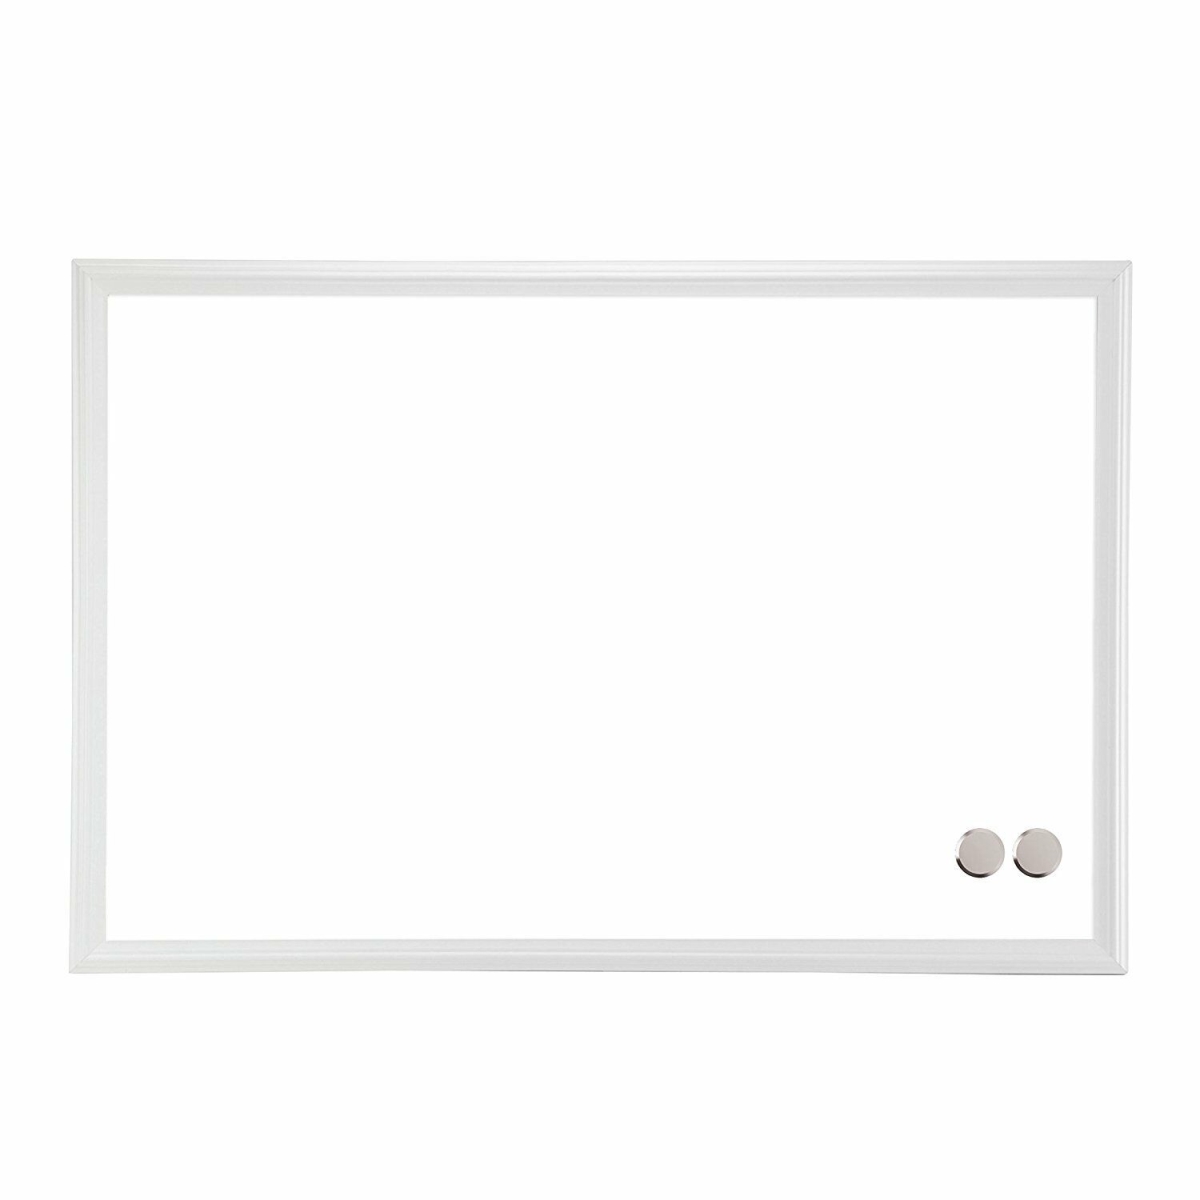 Ubrands 2071u0001 Magnetic Dry Erase Board White